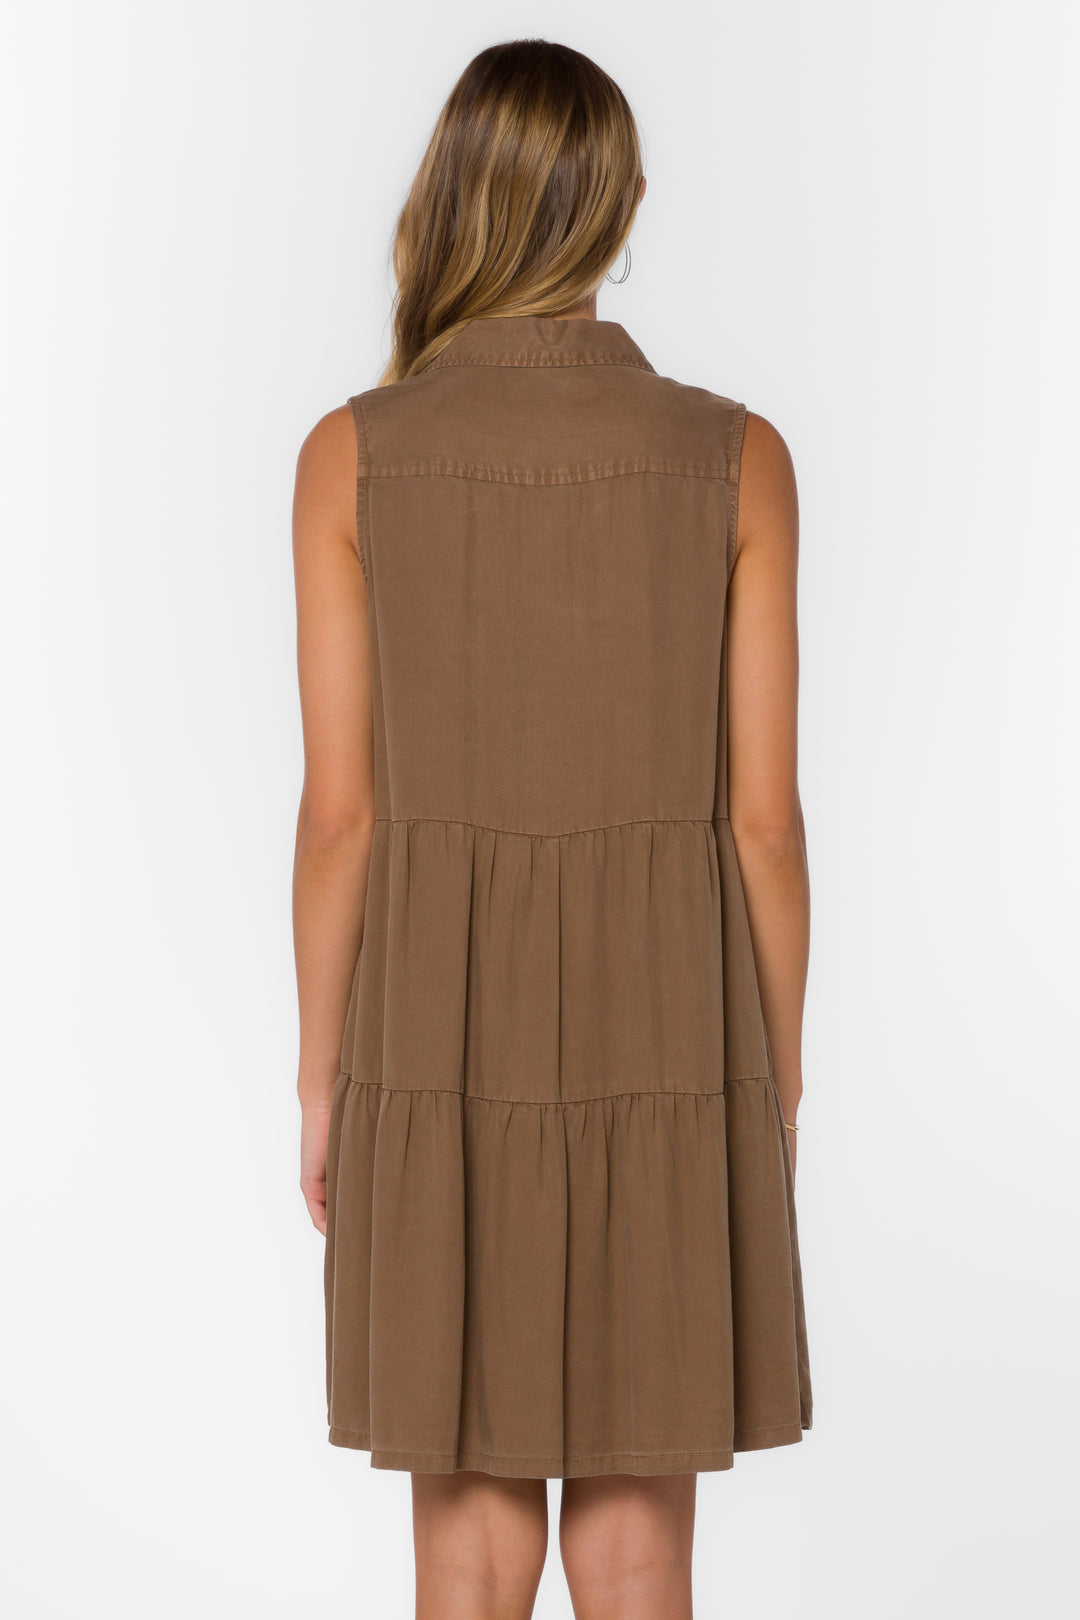 Collette Brown Dress - Dresses - Velvet Heart Clothing